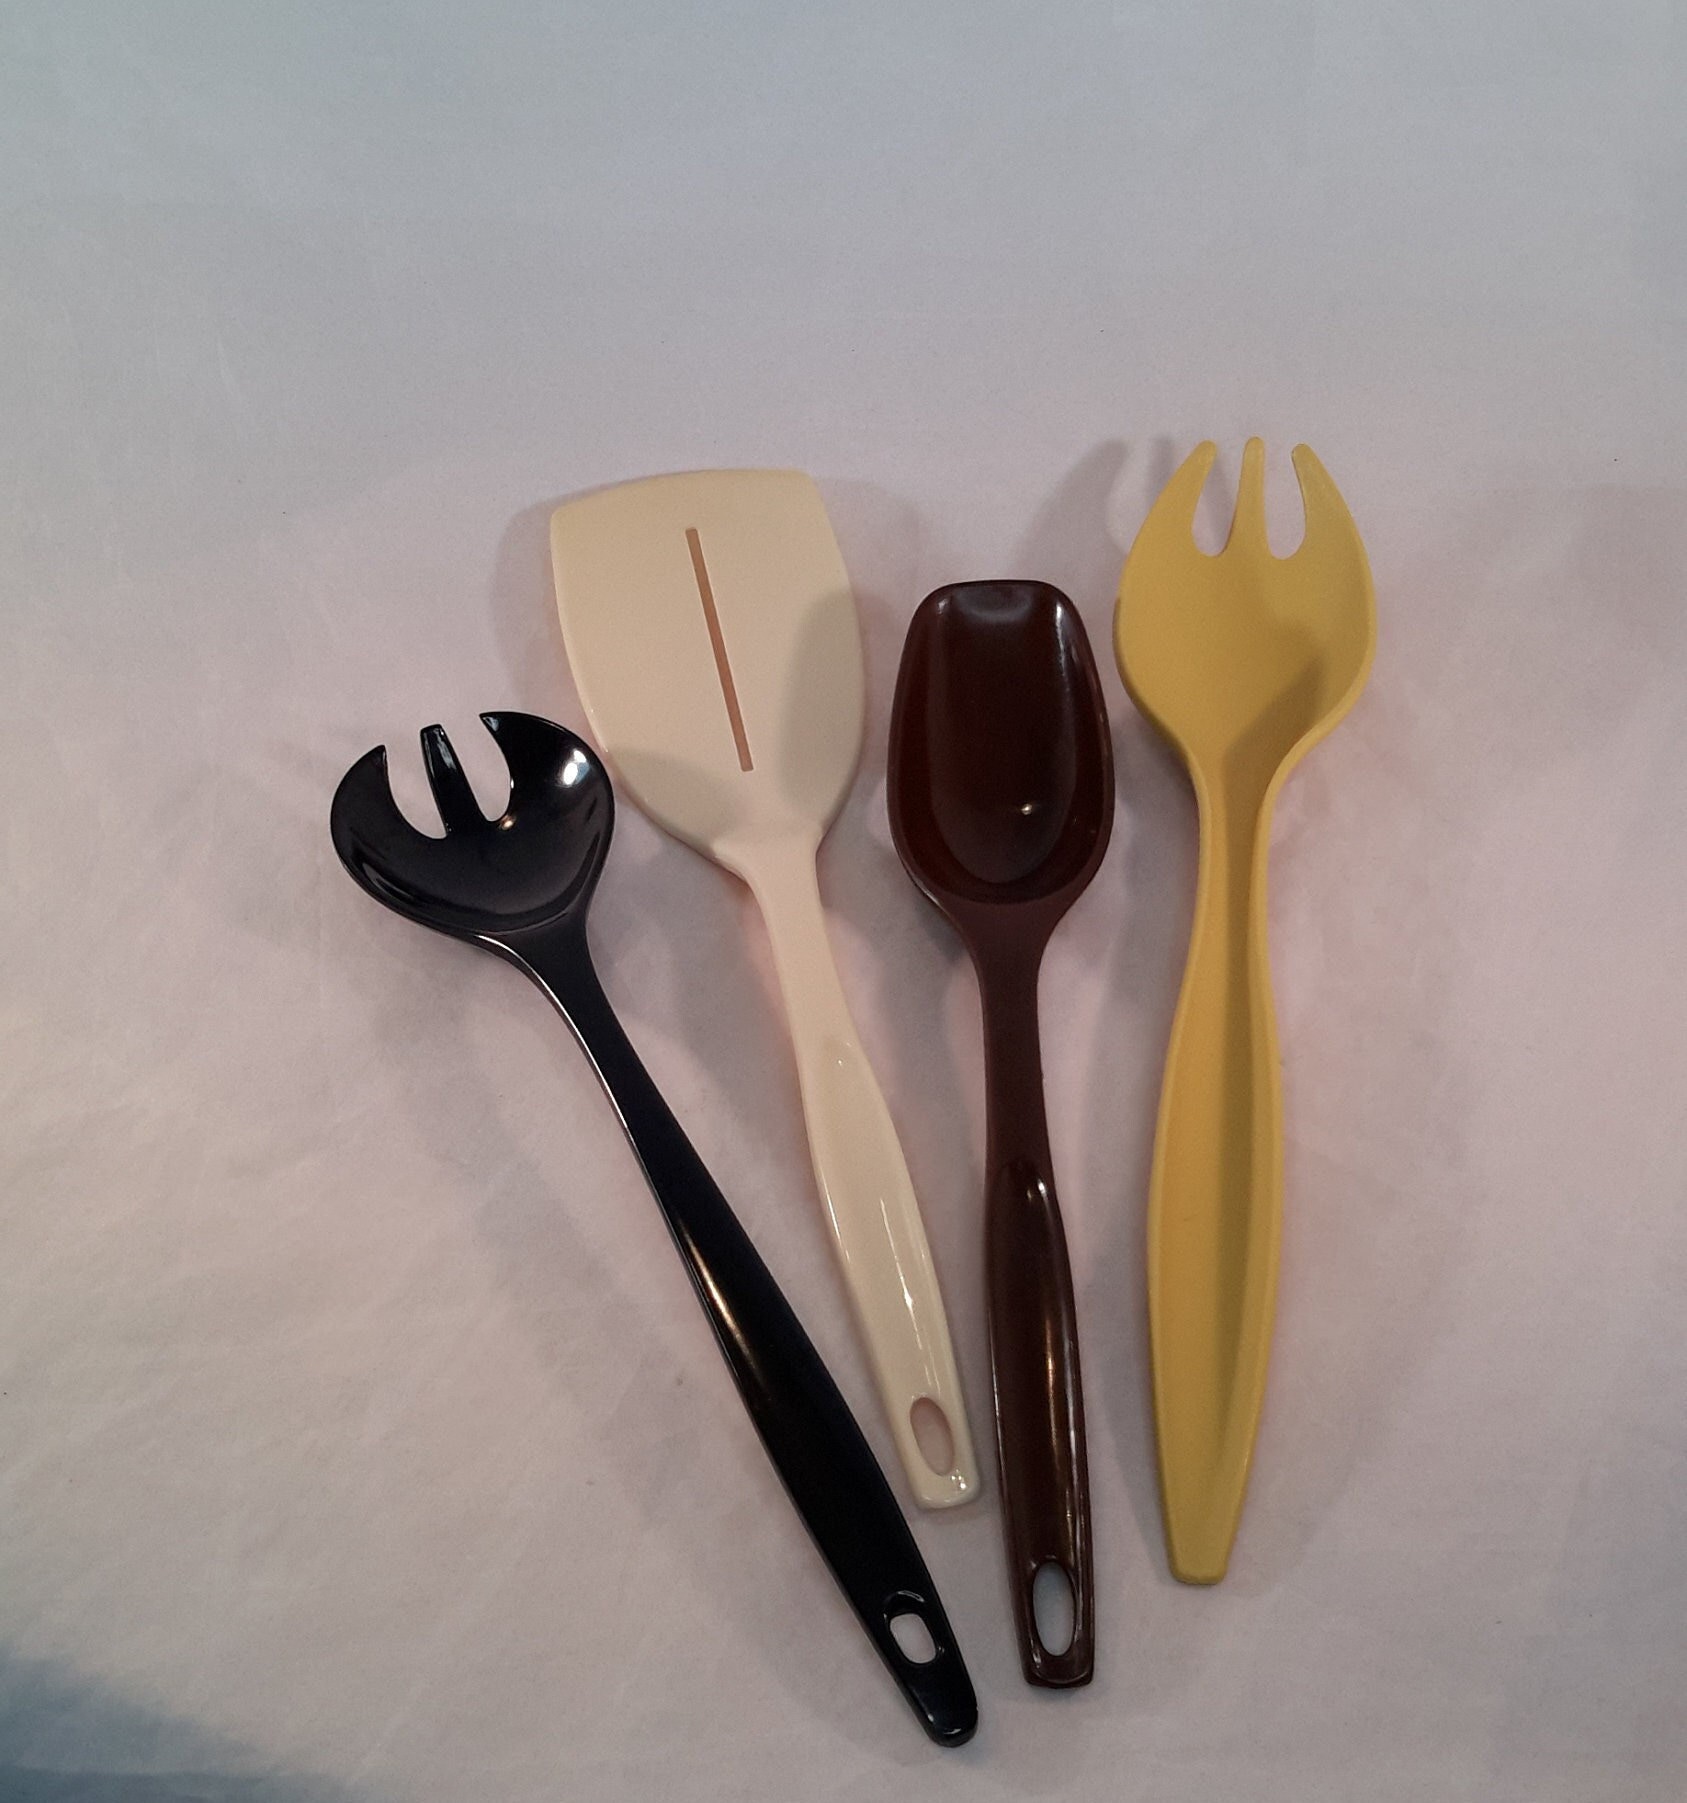 Nylon Plastic Foley Kitchen Utensils 1970s 1980s Kitchen Basting Spoon,  Icing Spreader, Soup Ladle, Potato Masher 